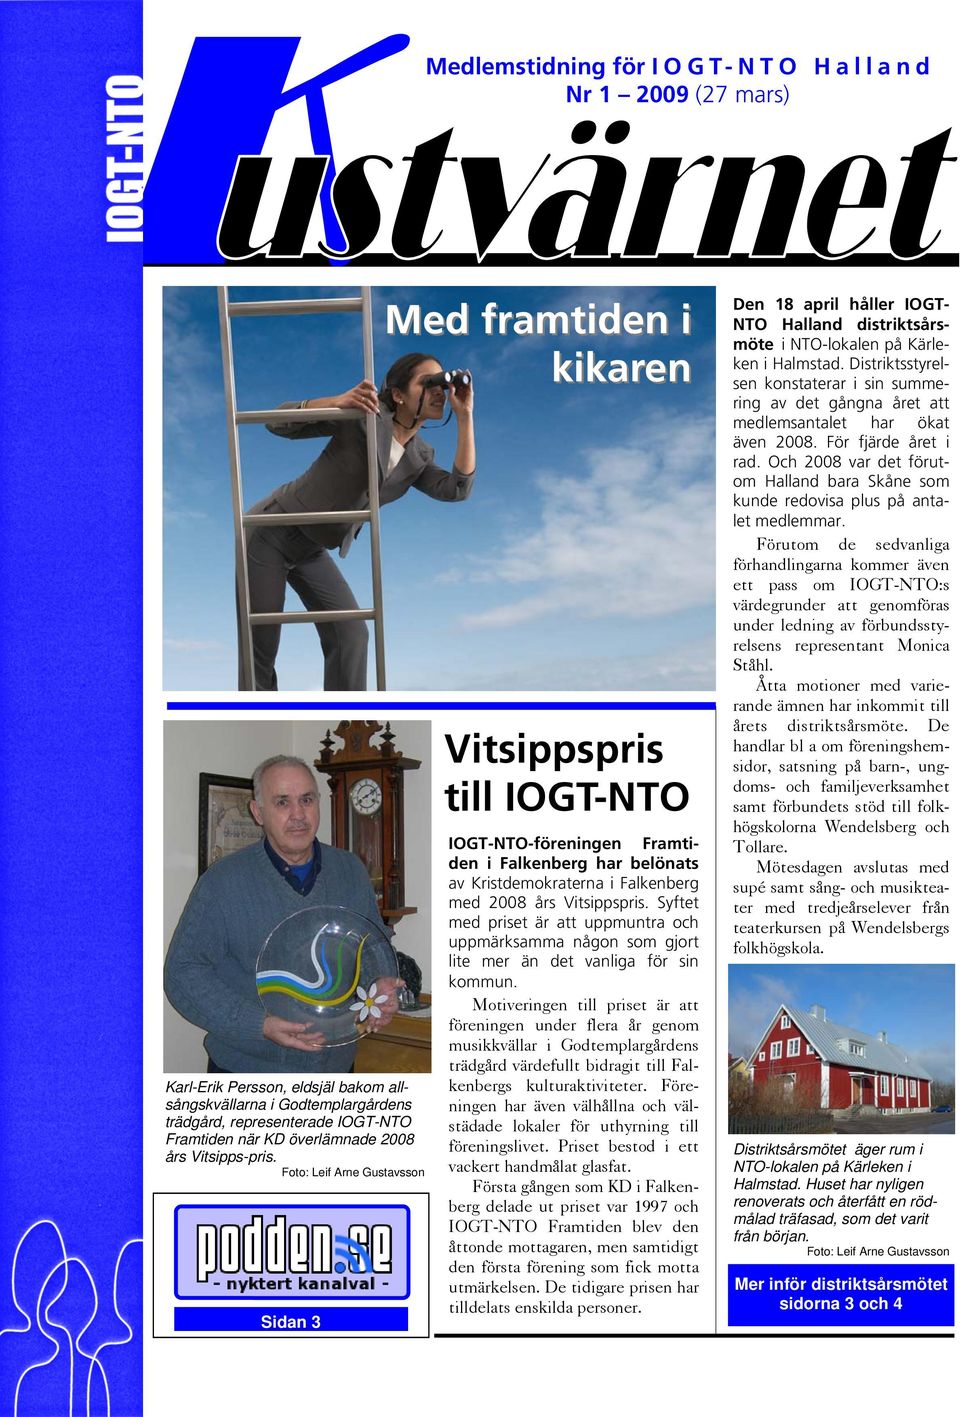 Foto: Leif Arne Gustavsson Sidan 3 Med framtiden i kikaren Vitsippspris till IOGT-NTO IOGT-NTO-föreningen Framtiden i Falkenberg har belönats av Kristdemokraterna i Falkenberg med 2008 års